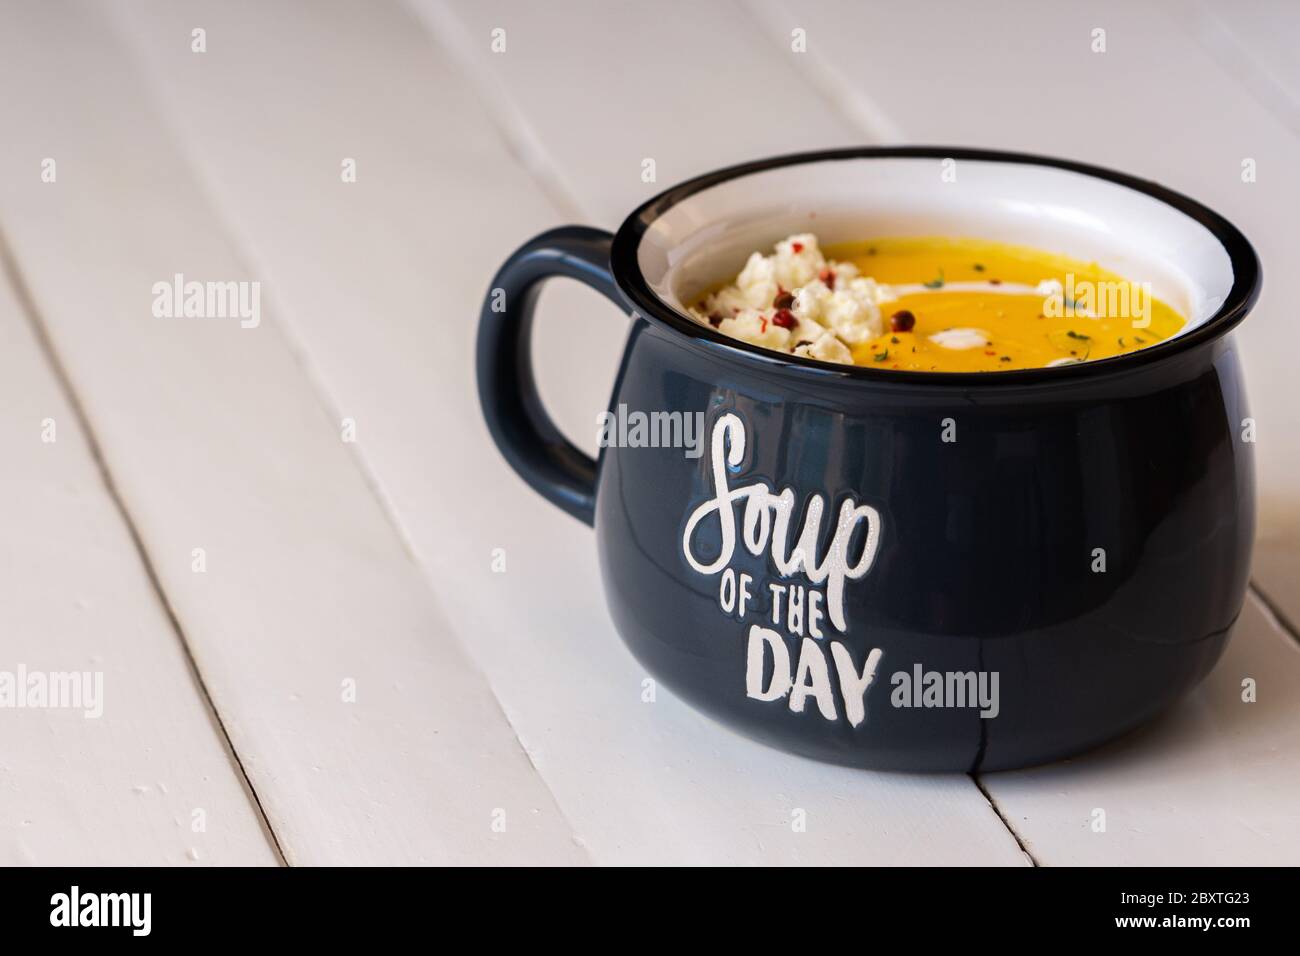 Zuppa di zucca in una ciotola blu isolata. Iscrizione: Zuppa del giorno. Pranzo o cena vegetariani. Concetto di cibo sano. Spazio di copia. Foto Stock